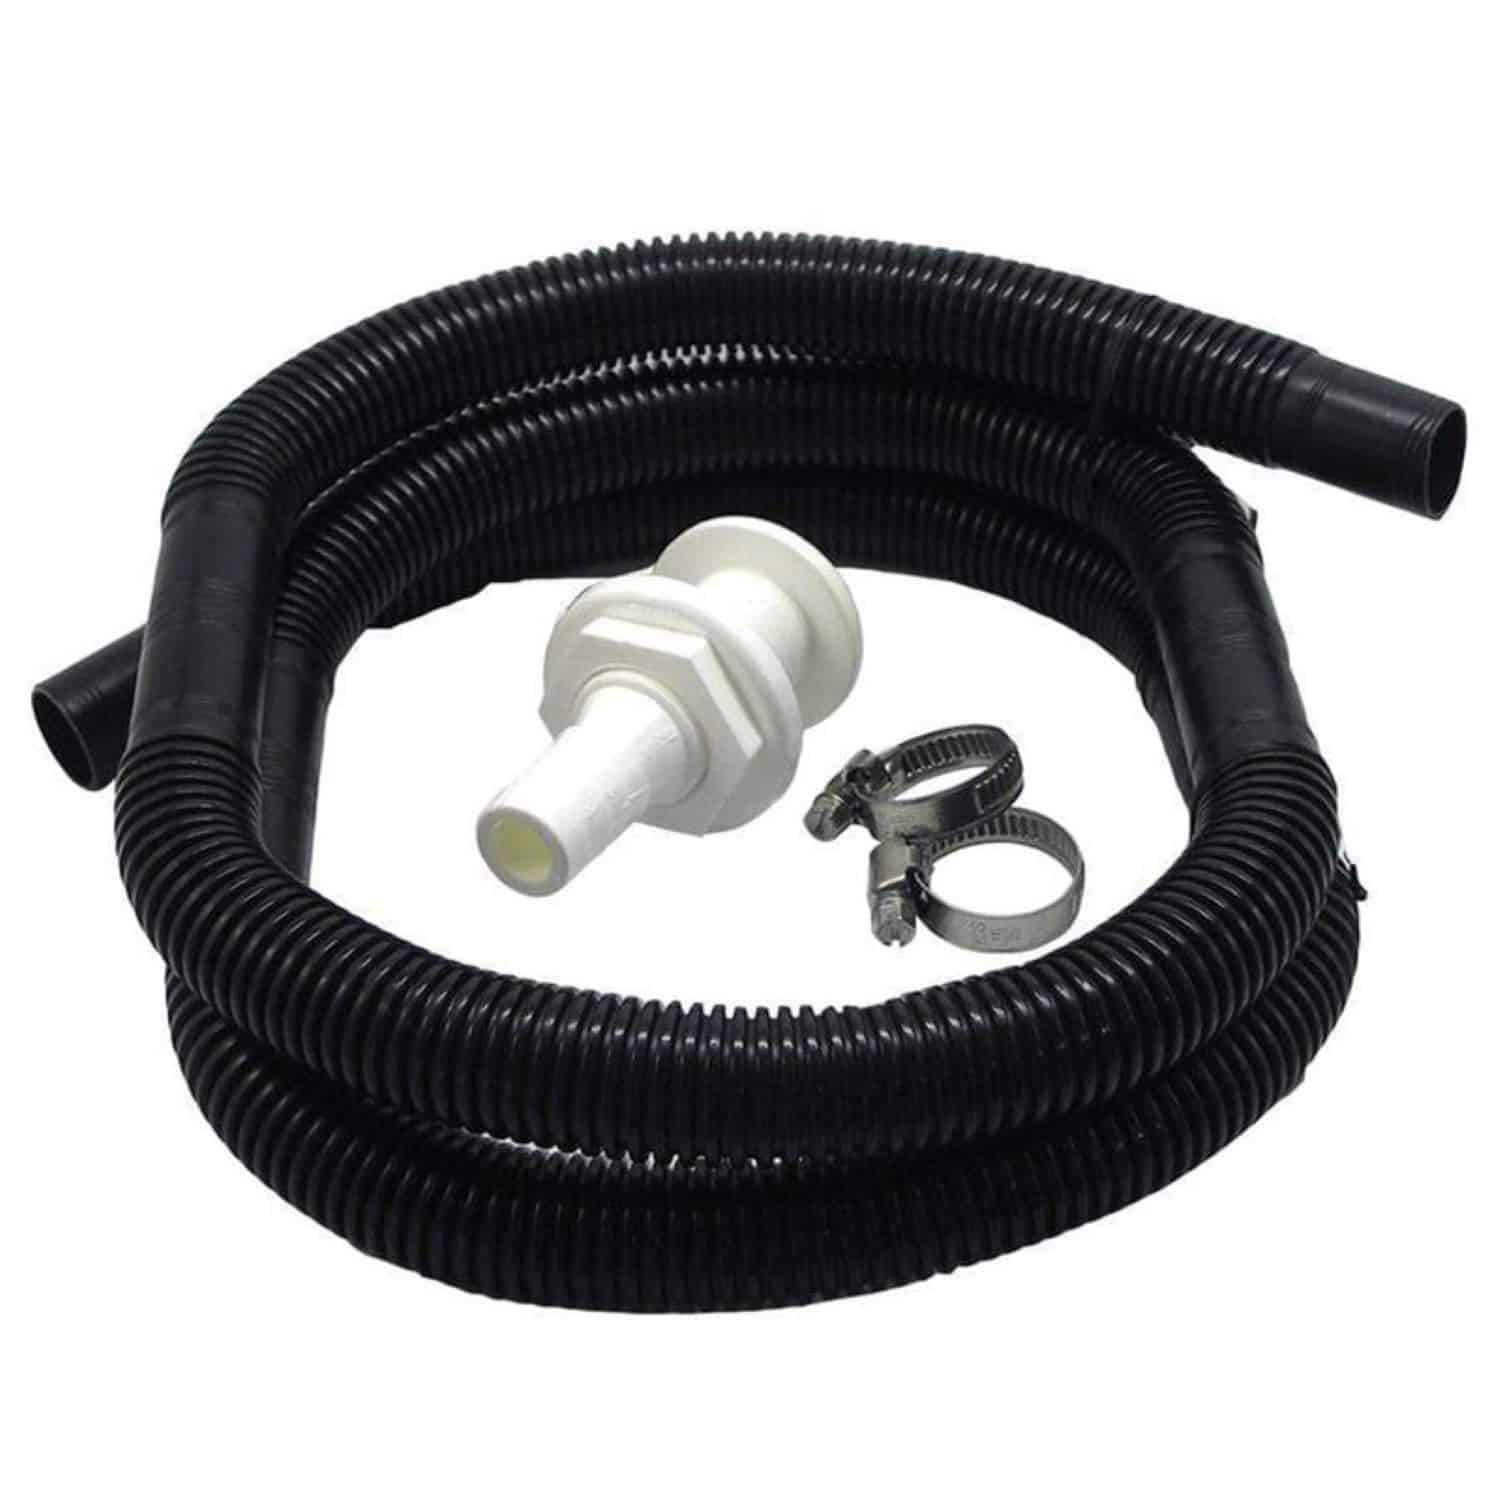 Bilge pump hose kit